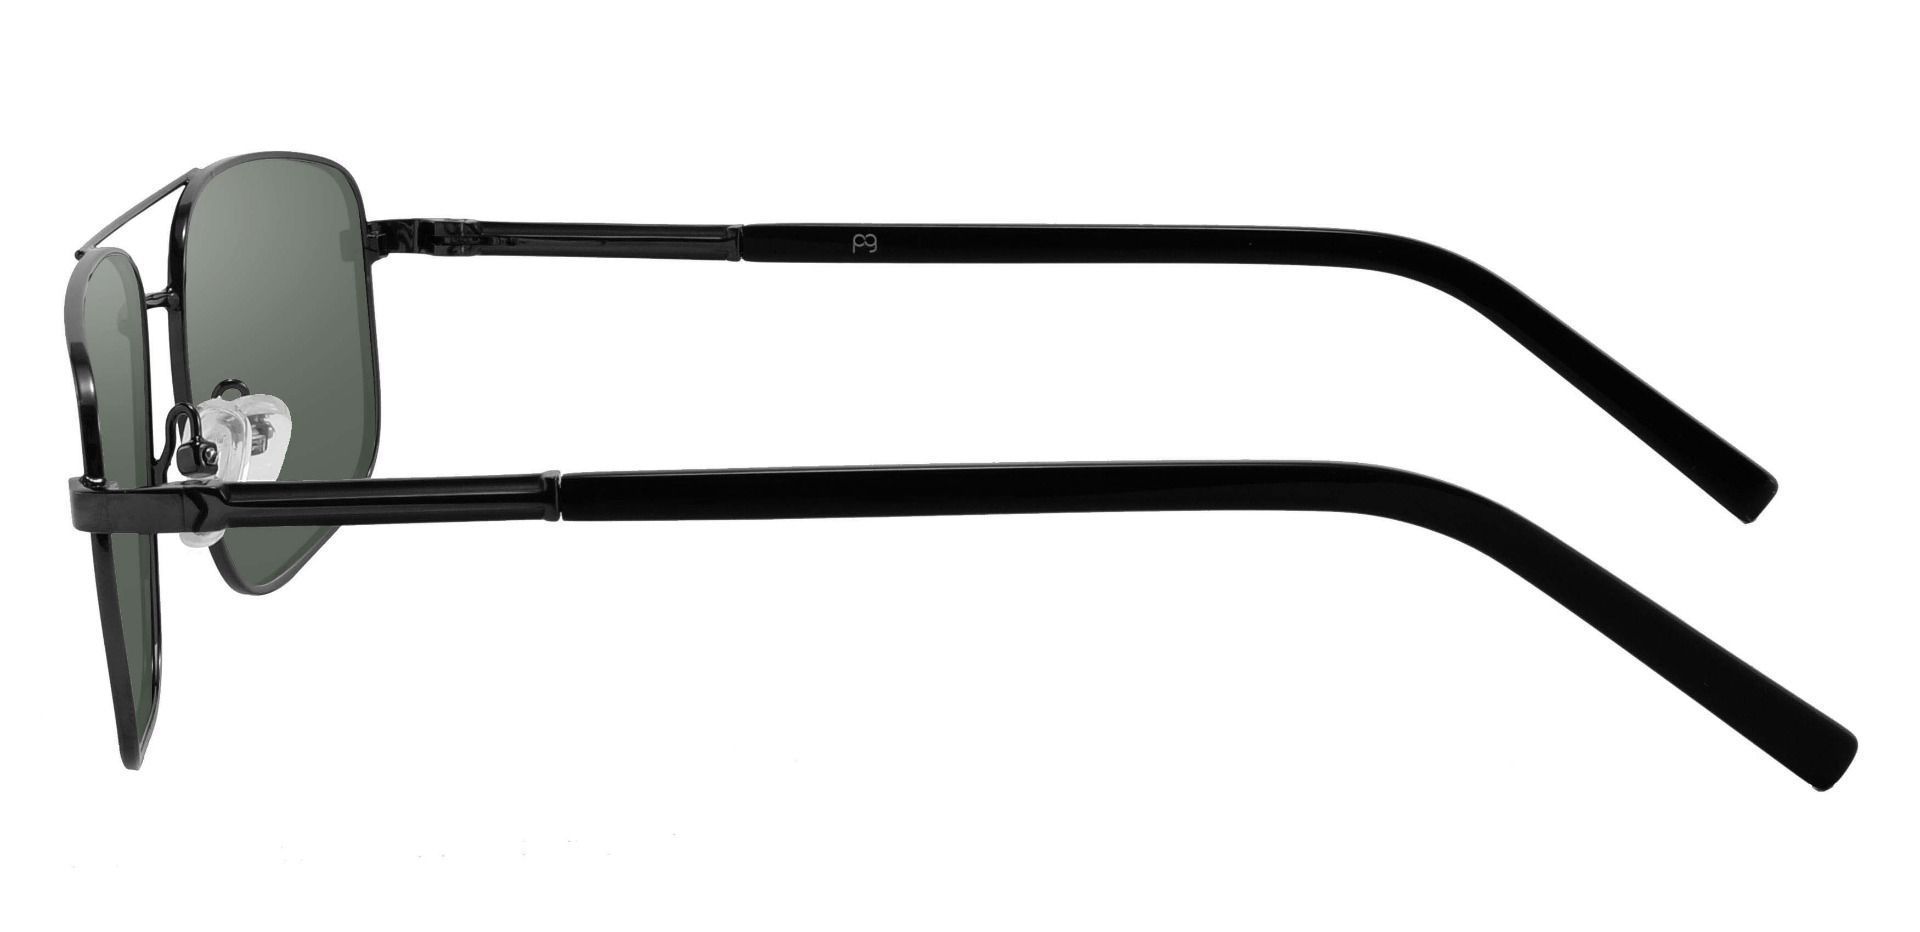 Davenport Aviator Lined Bifocal Sunglasses - Black Frame With Green Lenses